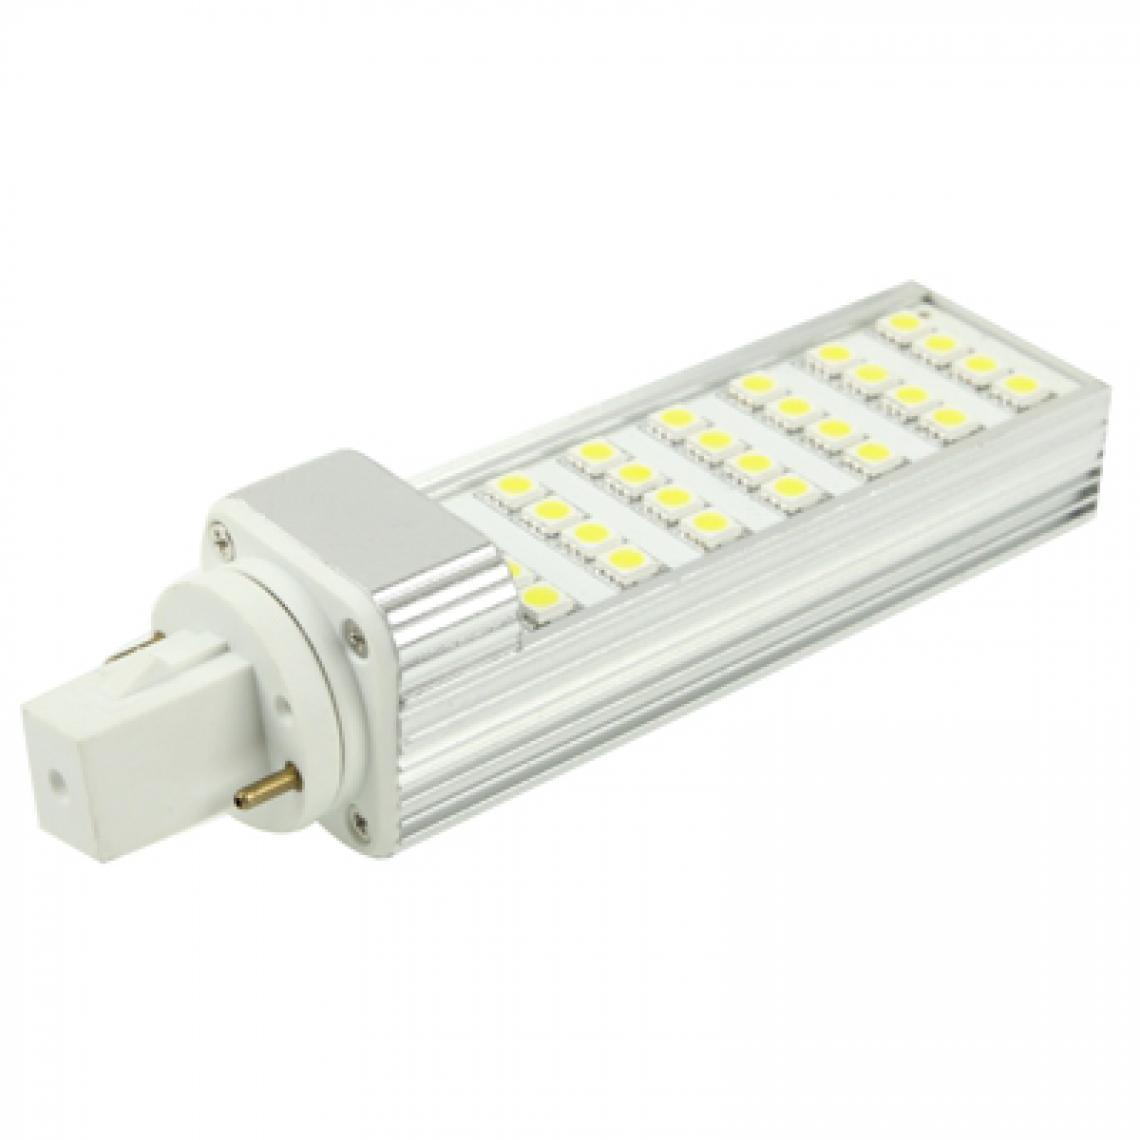 Wewoo - Ampoule LED Horizontale blanc G24 6W 28 5050 SMDLED Transverse, AC 220V - Ampoules LED